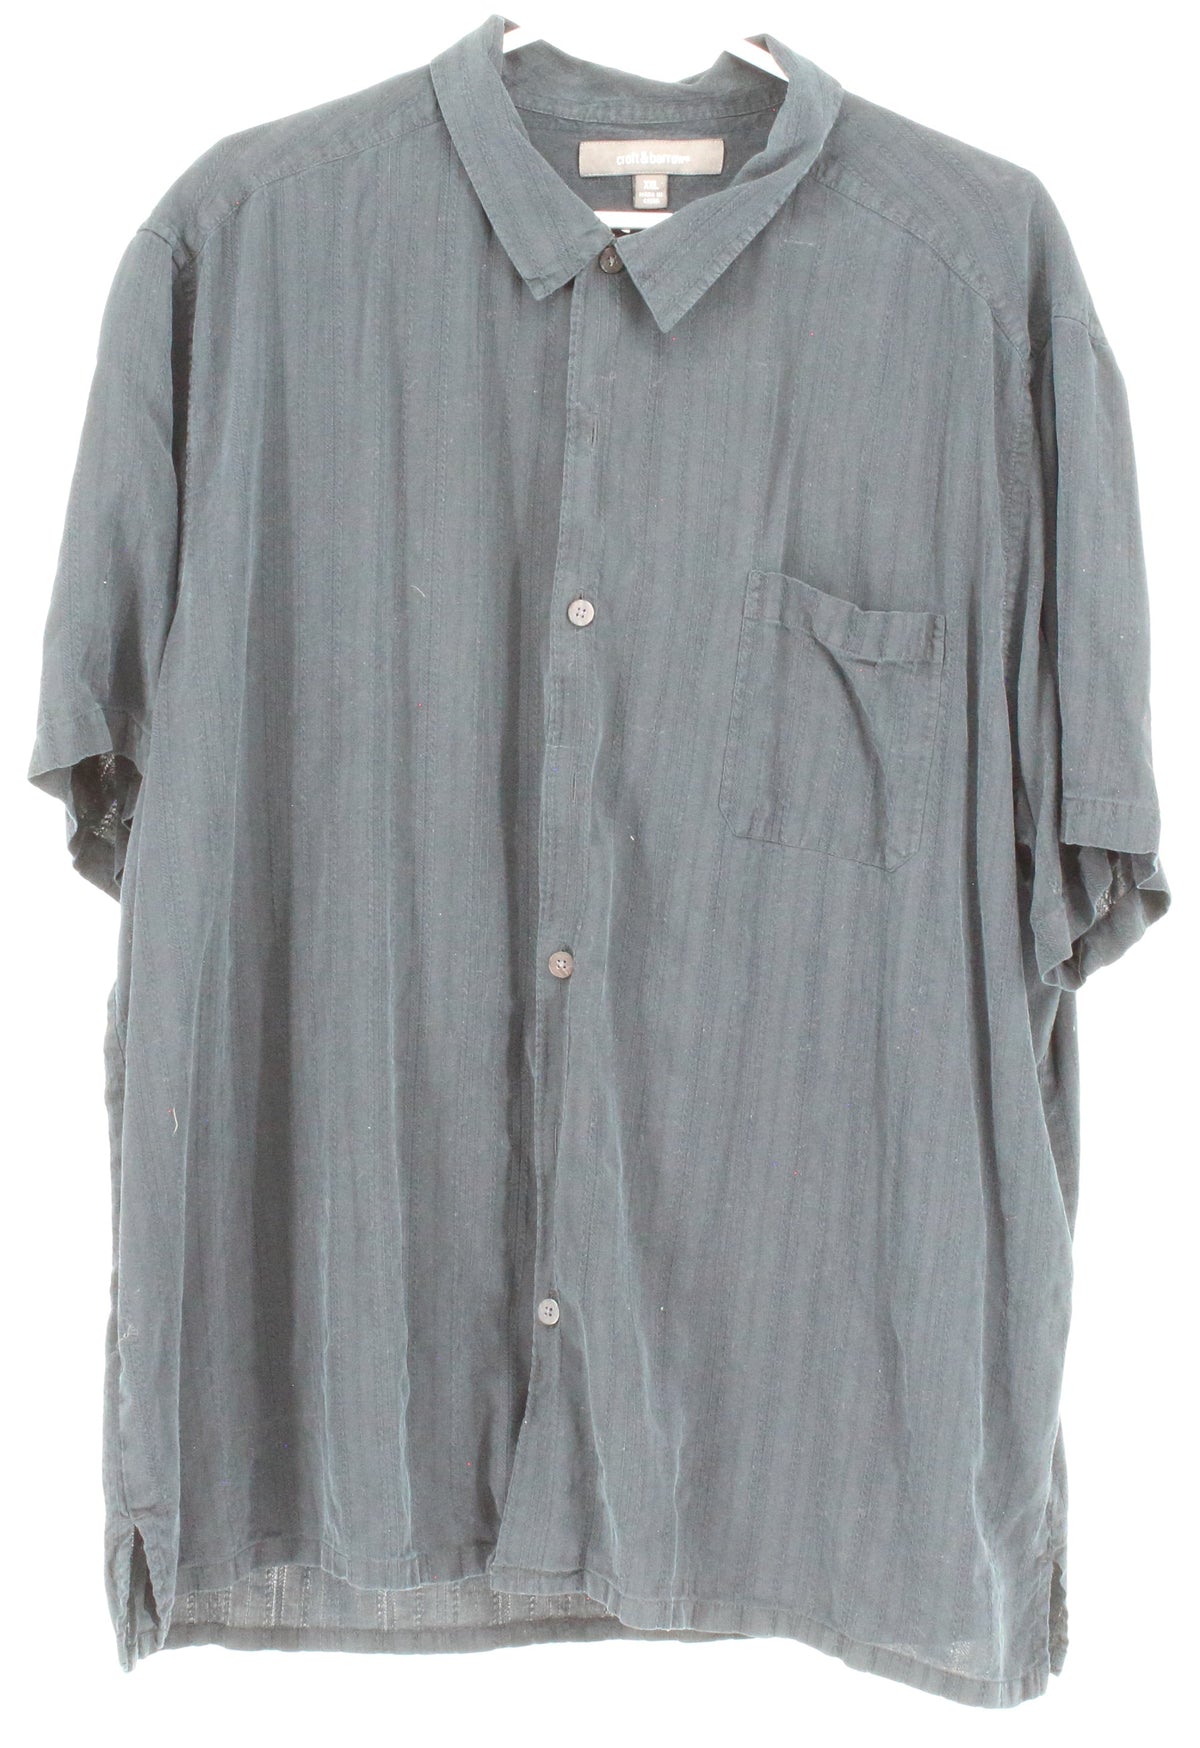 Croft & Barrow Black Button-Up Short Sleeve Shirt